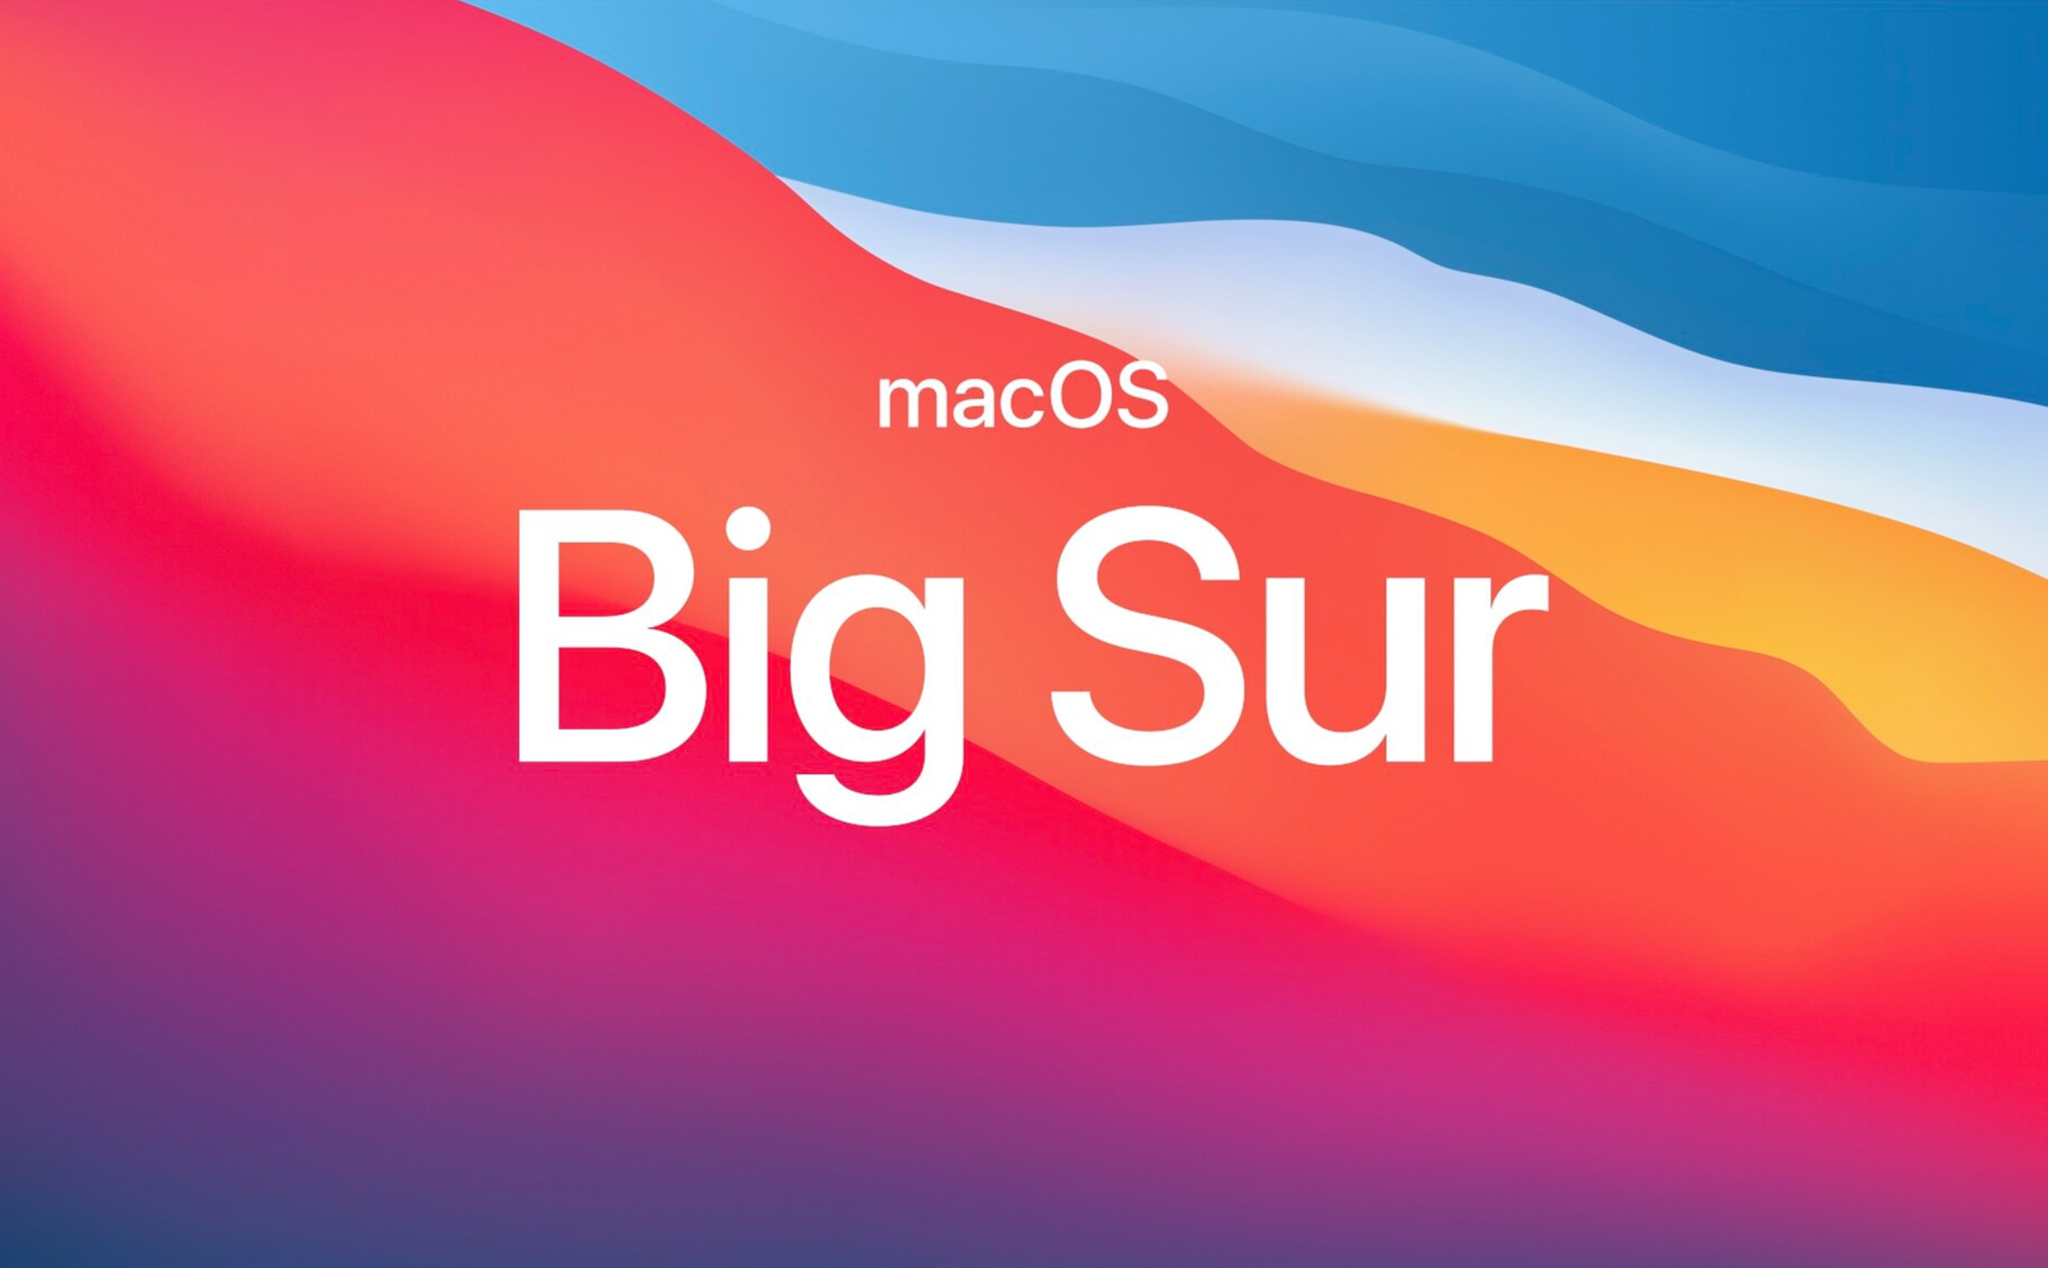 Đã có macOS Big Sur 11.1 developers beta, lên nào anh em